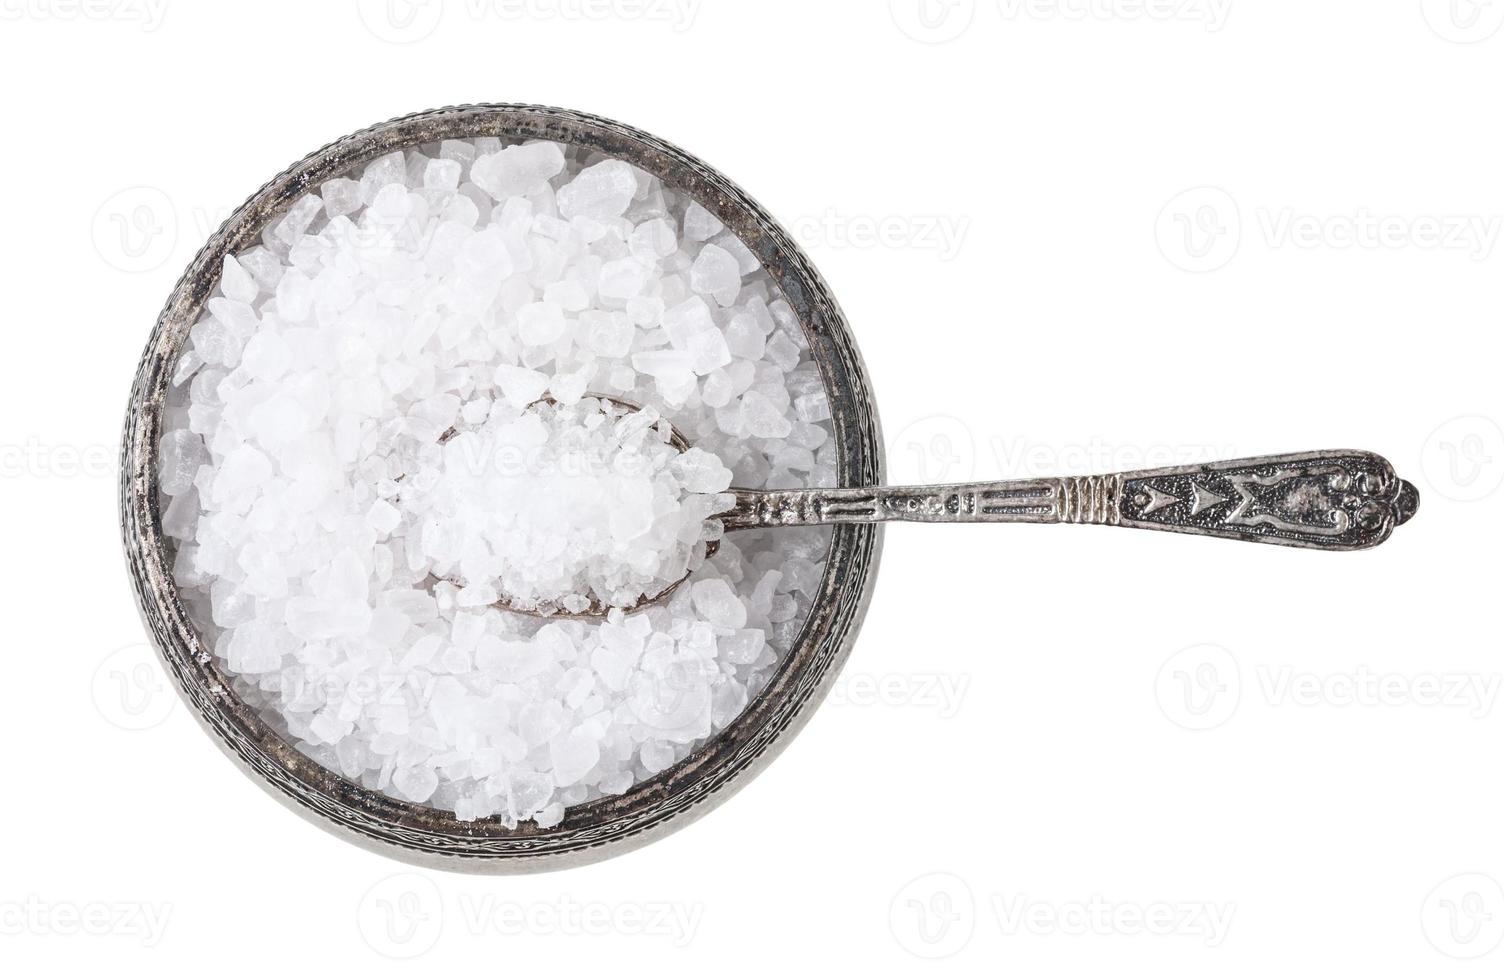 saliera d'argento con cucchiaio con sale marino grosso foto